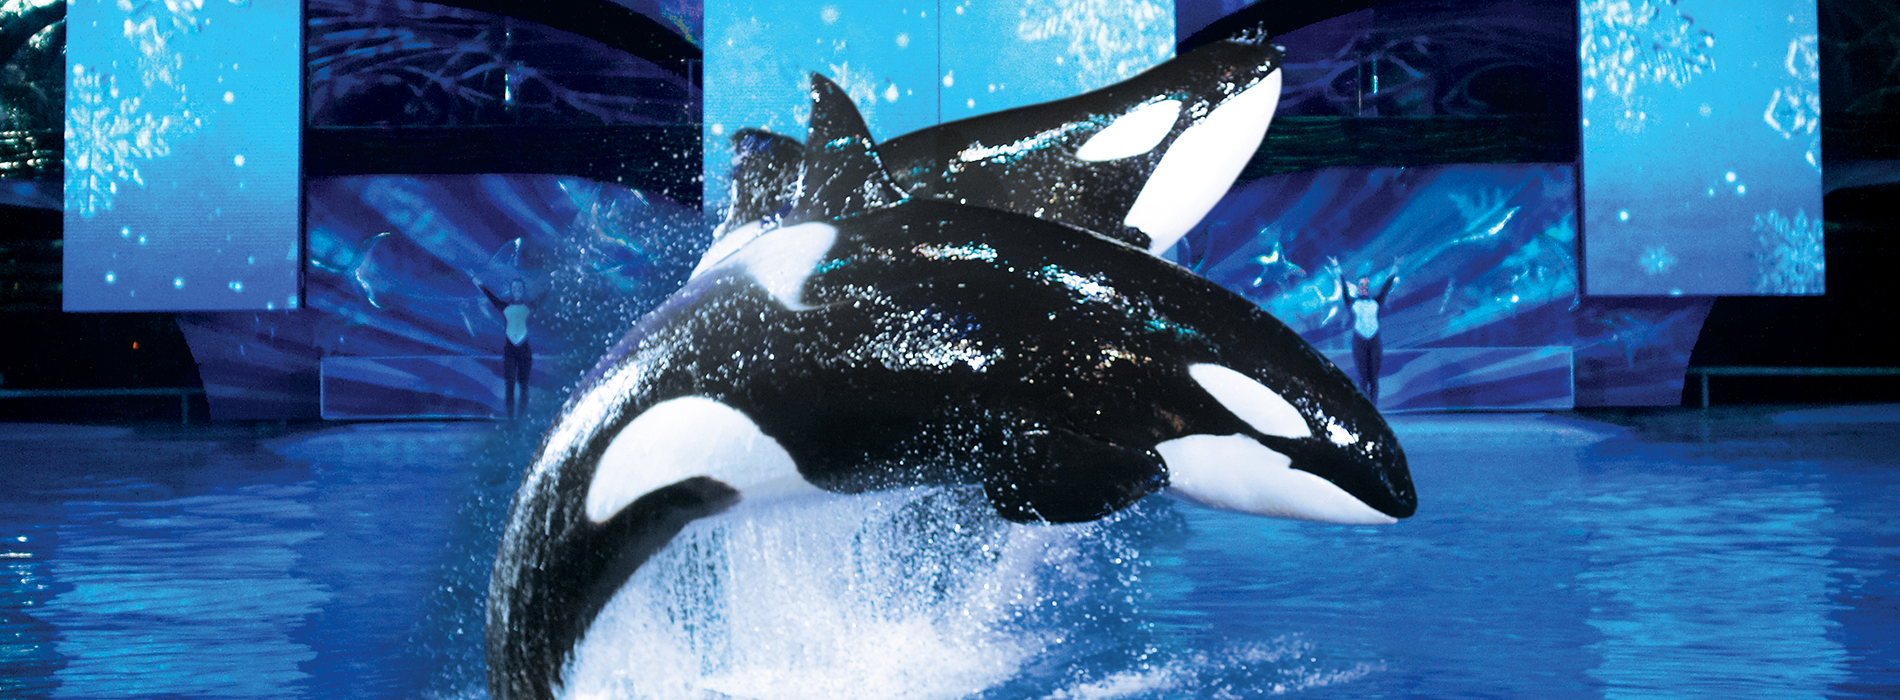 SeaWorld Shamu Show: "Believe"